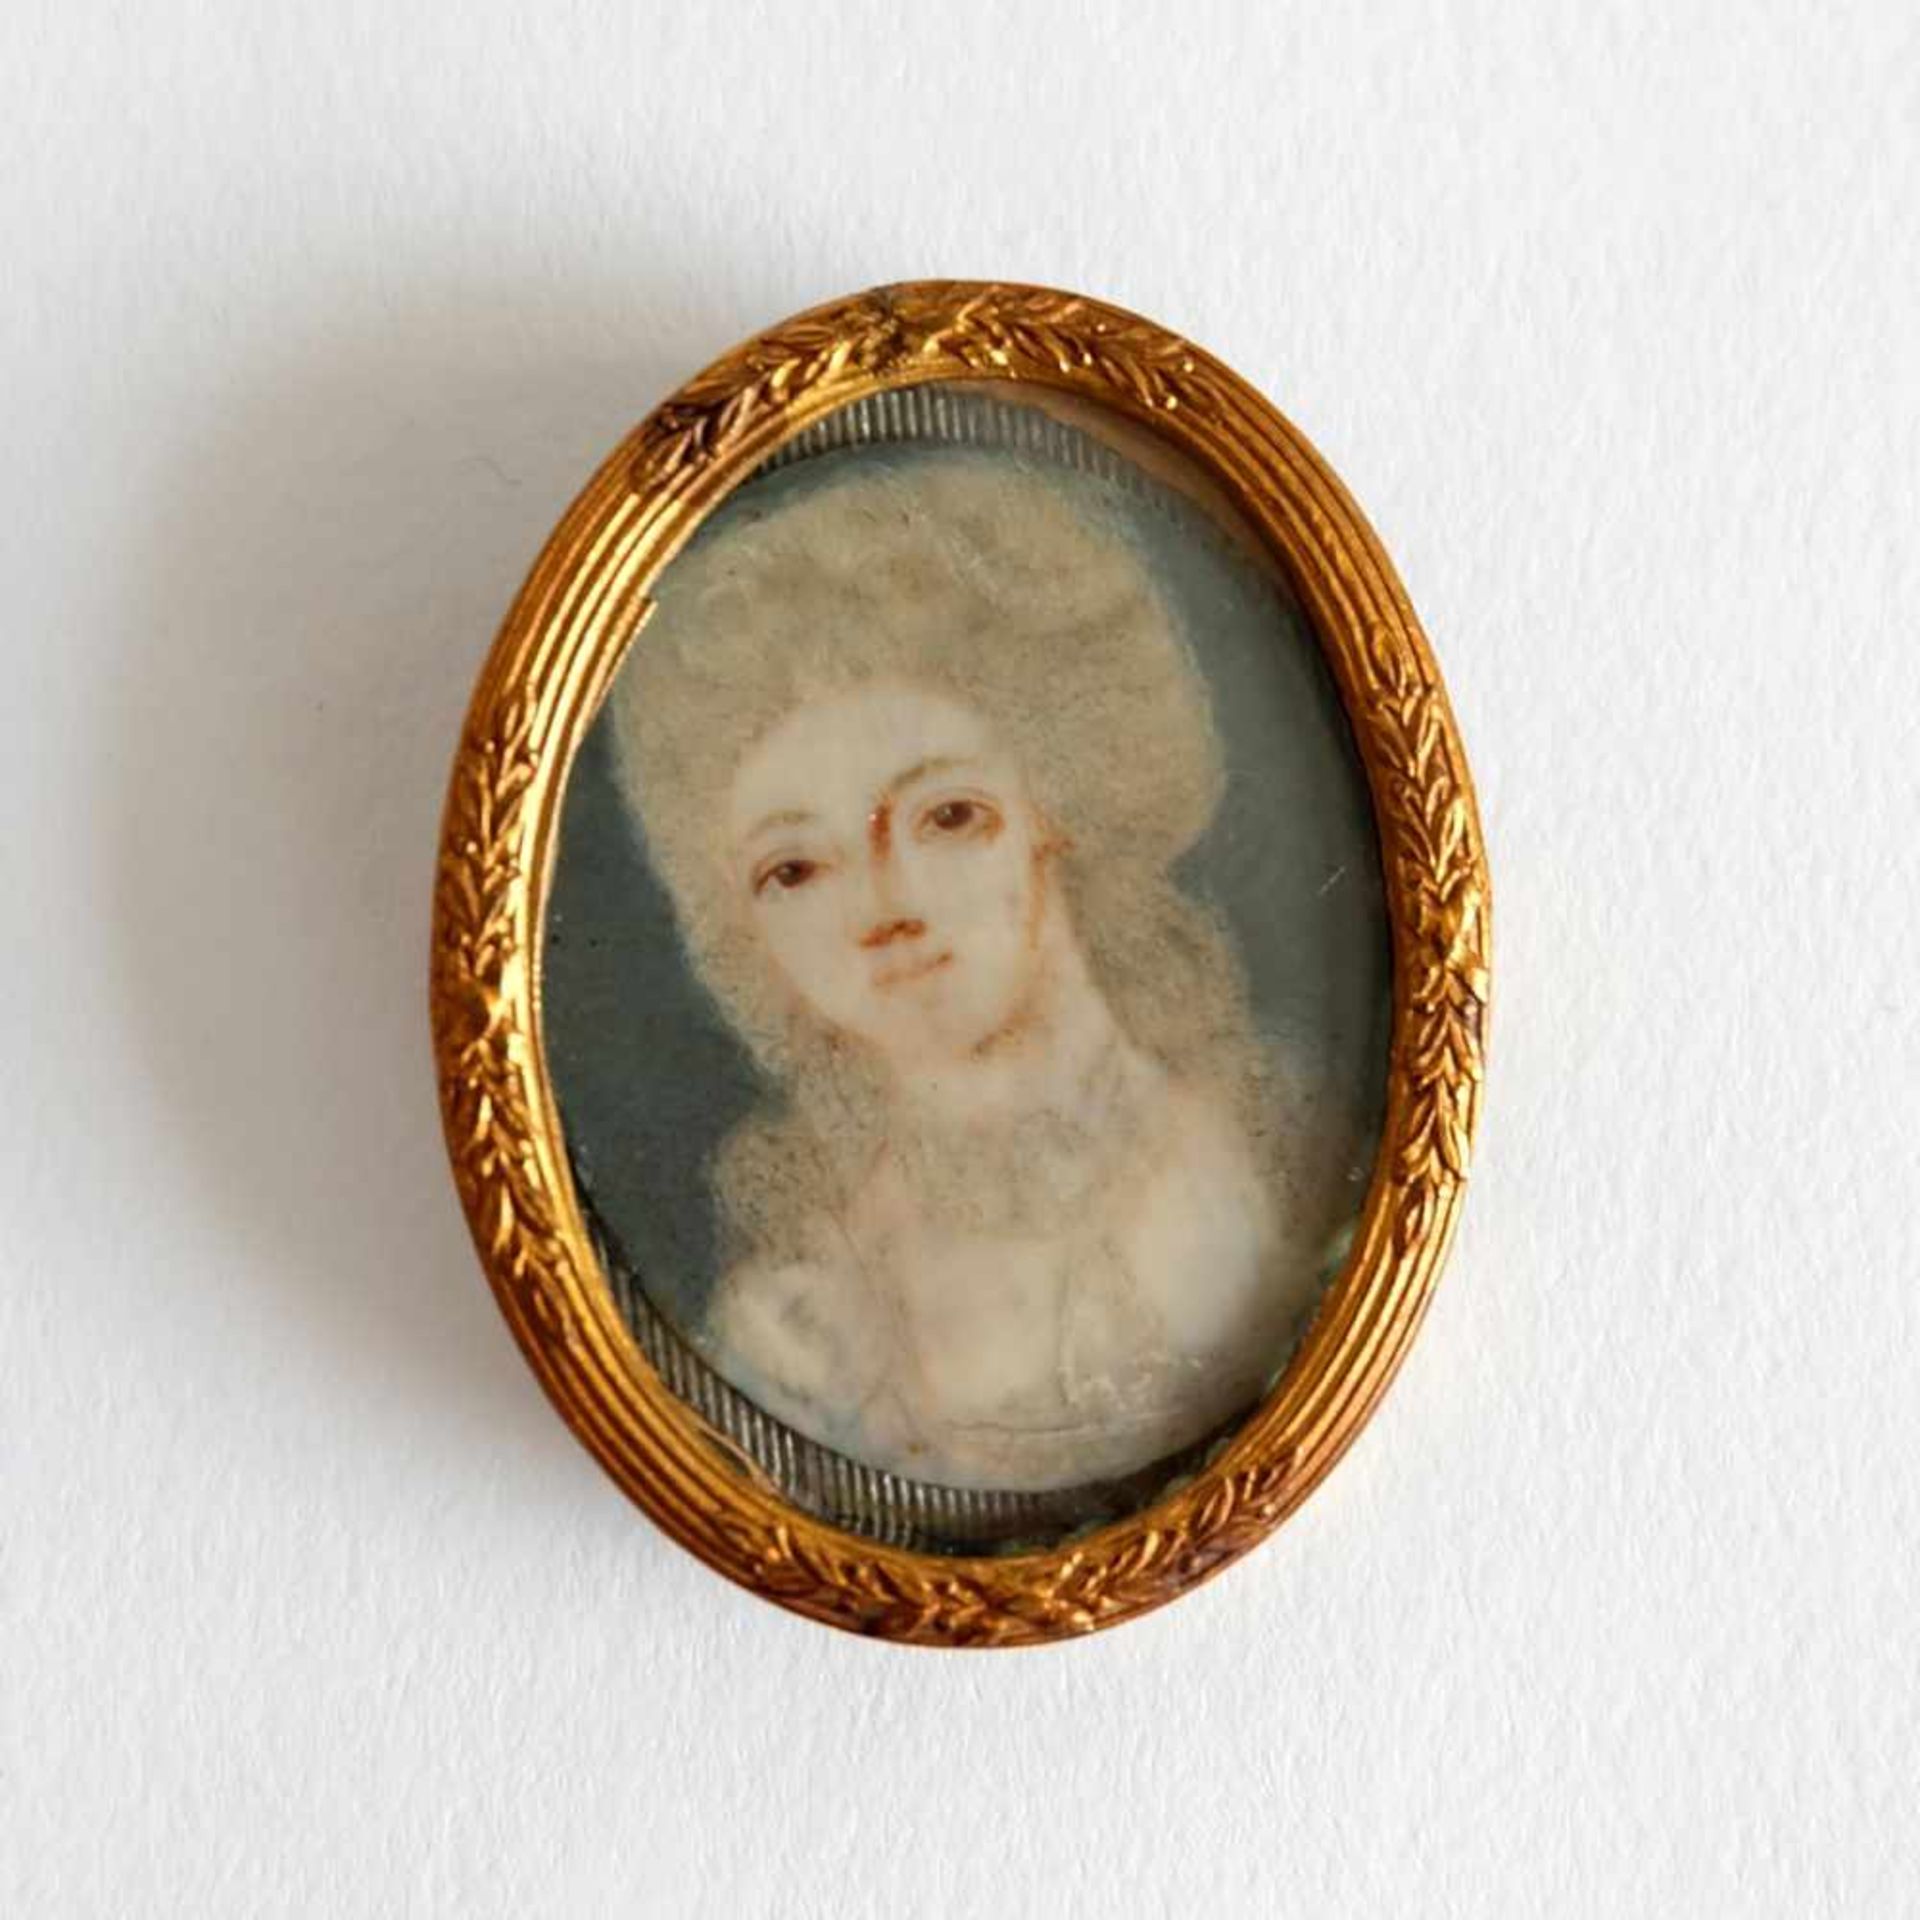 ELFENBEINMINIATUR, 18.Jh., Rokoko-Epoche, ovale Form, Brustportrait einer jungen Frau mit Perücke,